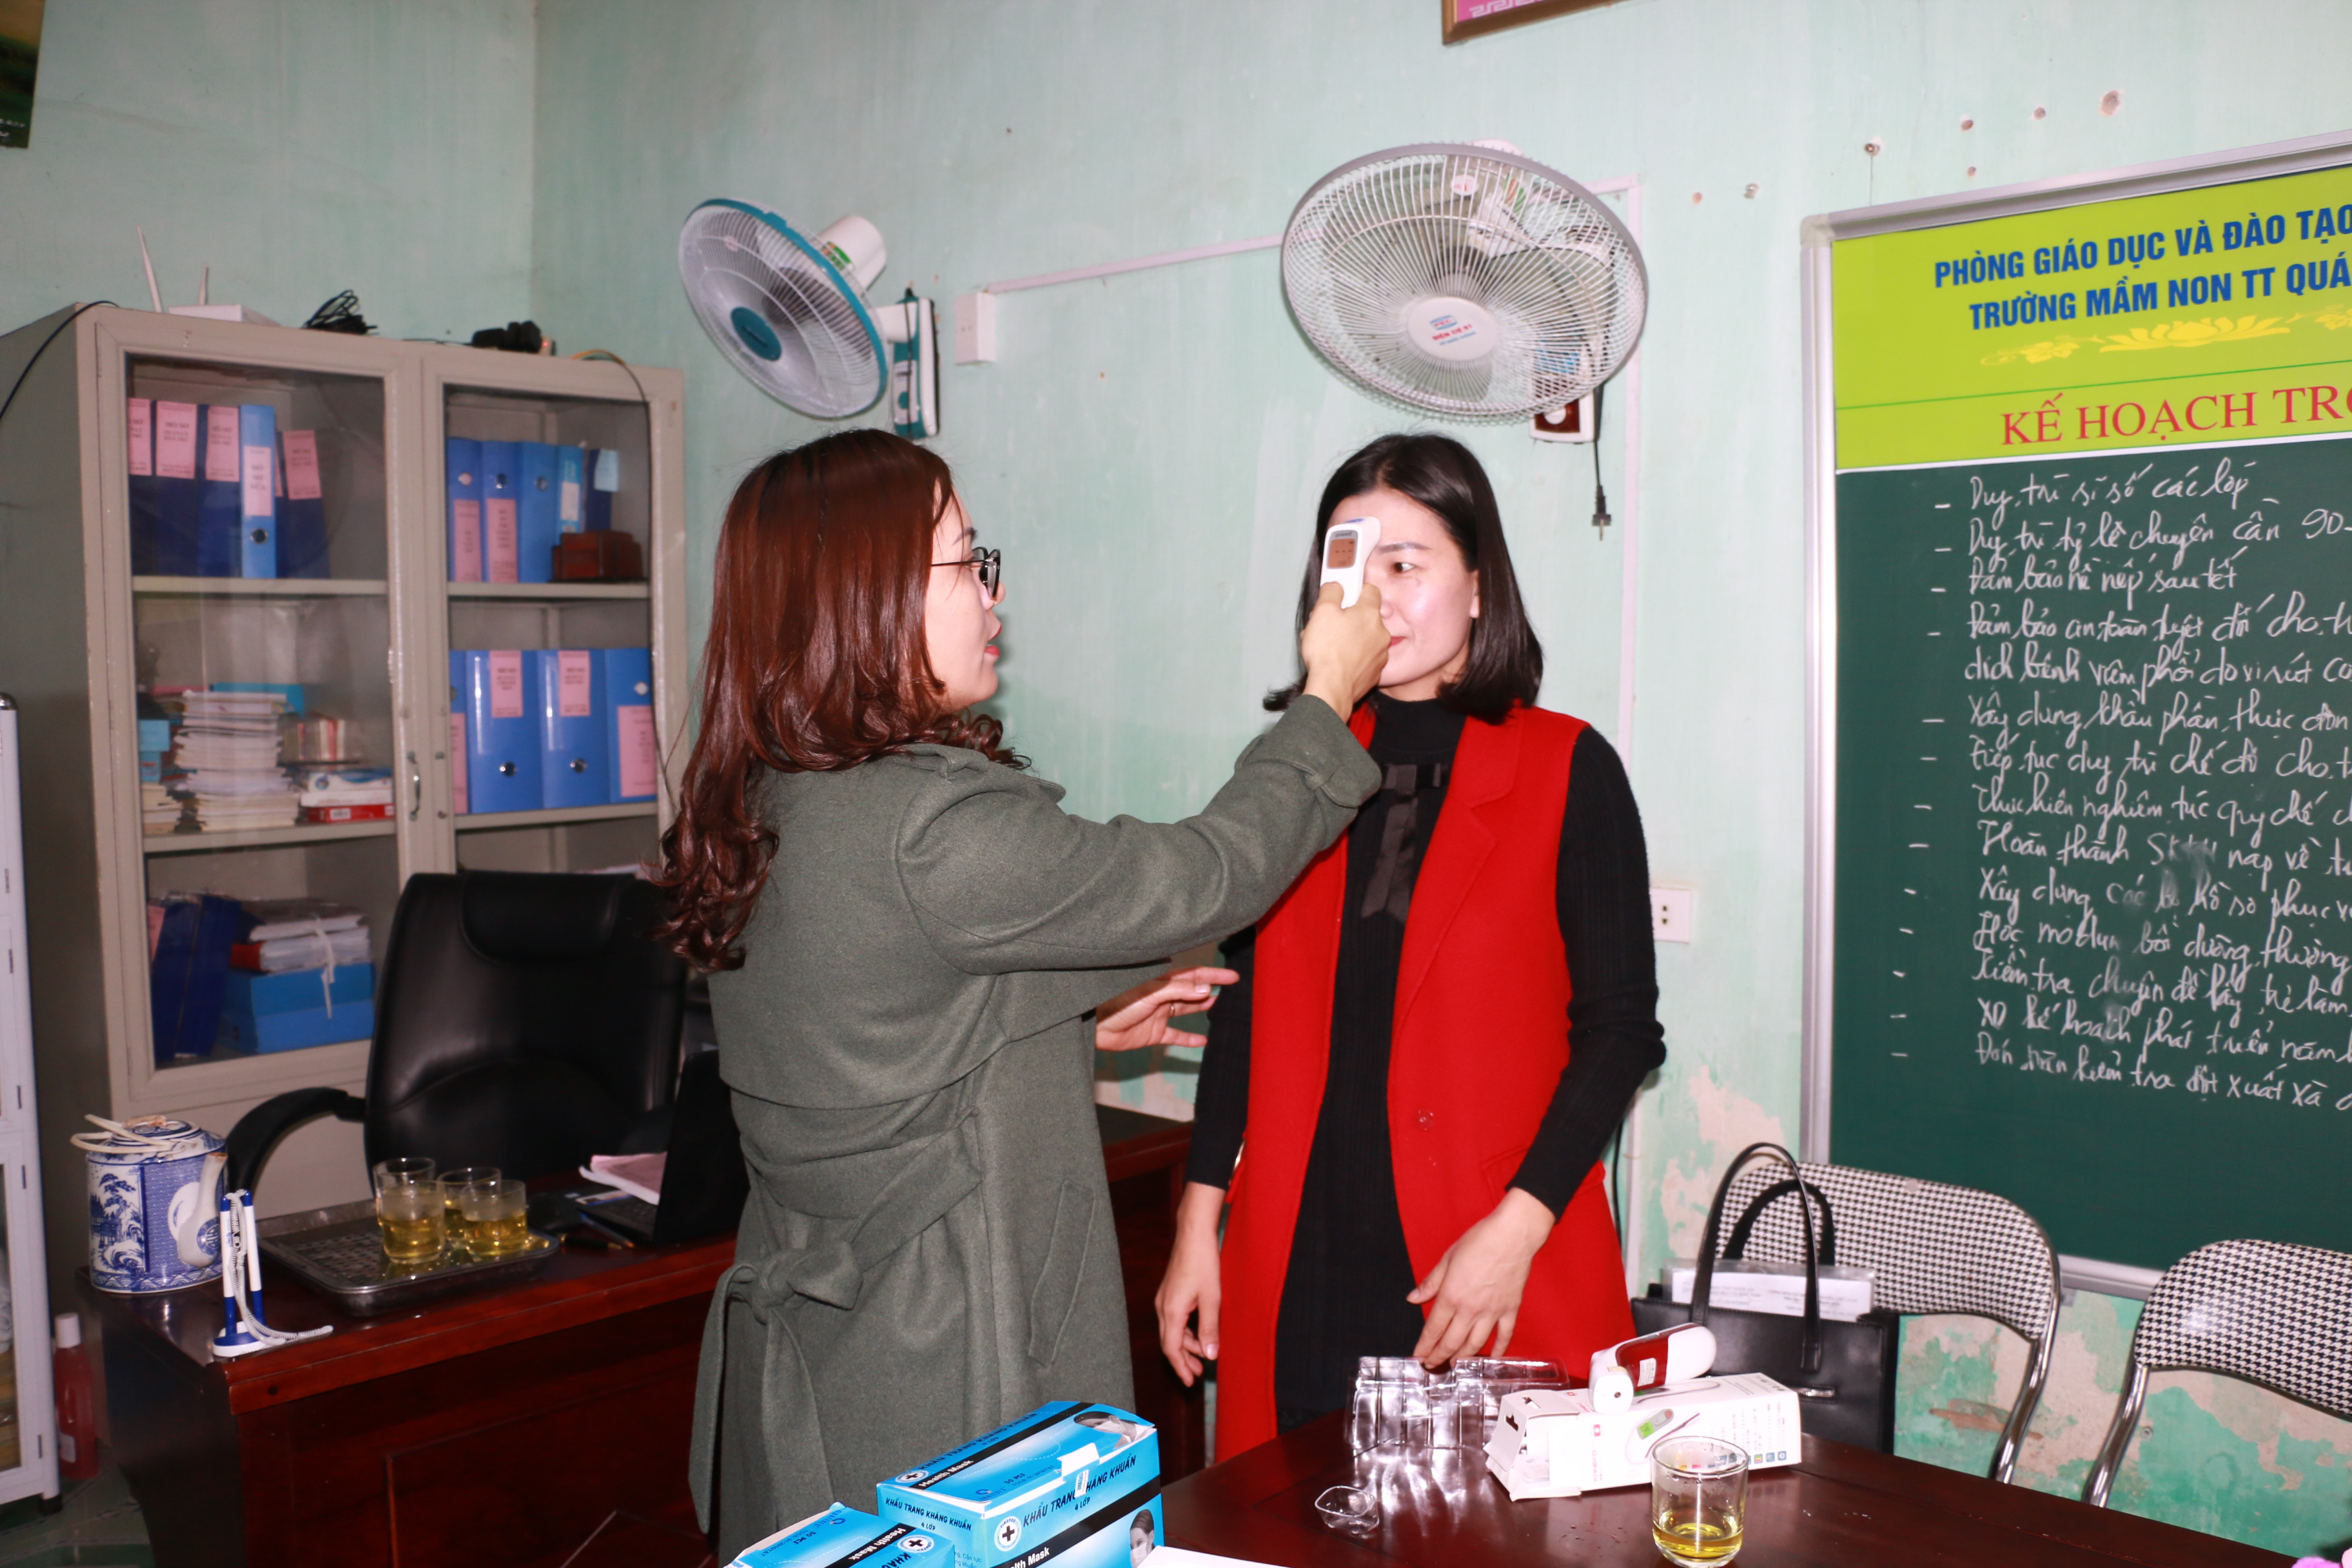 Bằng nguồn xã hội hóa và hỗ trợ kinh phí của địa phương một số trường đã sắm được máy đo thân nhiệt. Tại buổi thanh kiểm tra tại các trường đóng trên địa bàn huyện Nghi Lộc, đoàn thanh tra